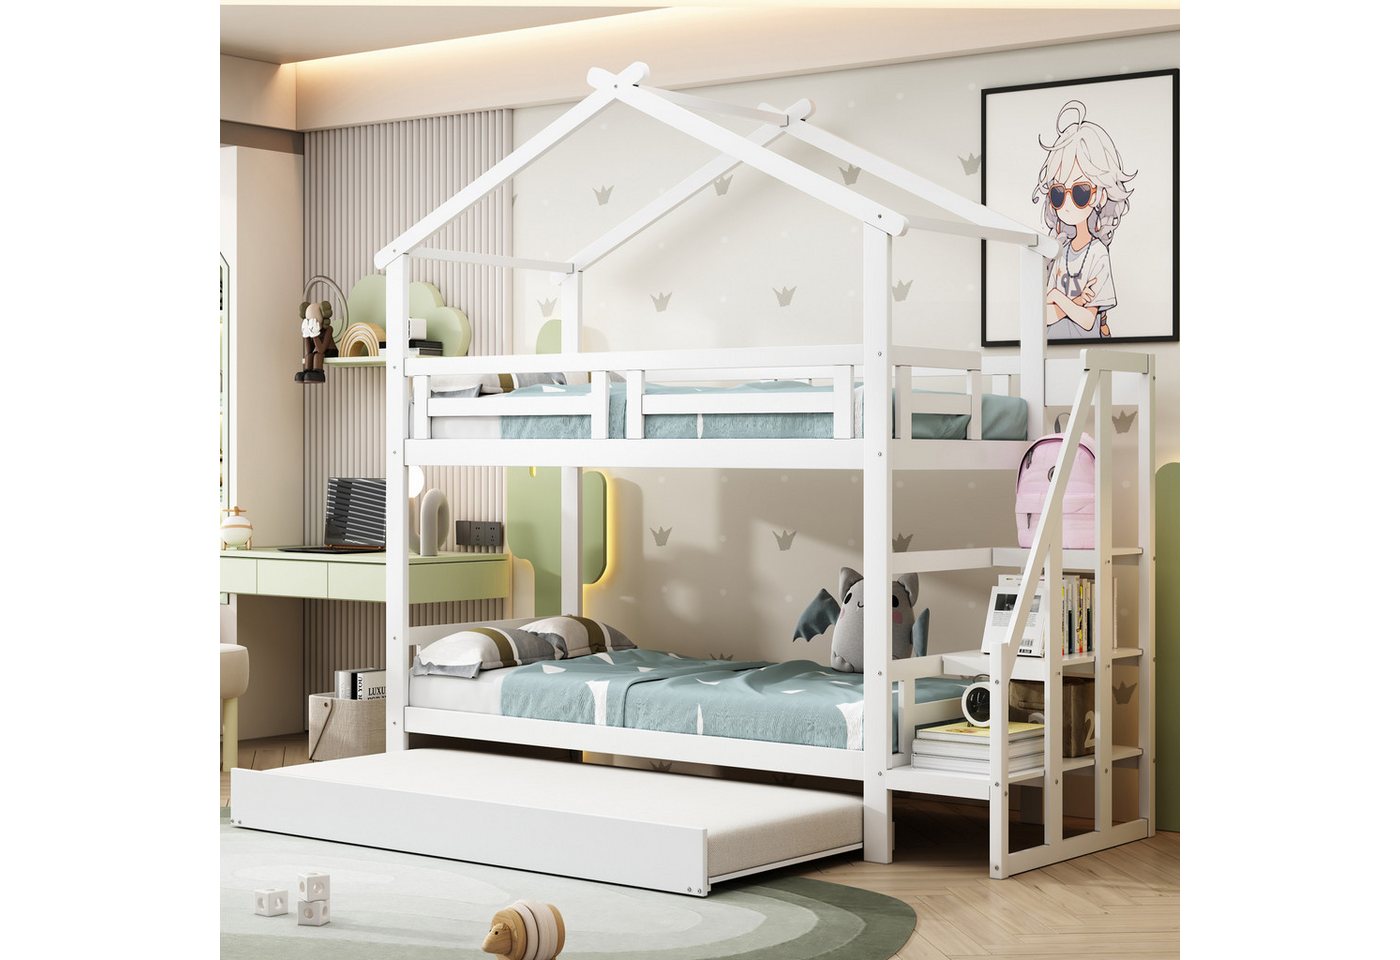 Flieks Etagenbett, Hausbett Kinderbett 90x200cm mit Ausziehbett 90x190cm + günstig online kaufen